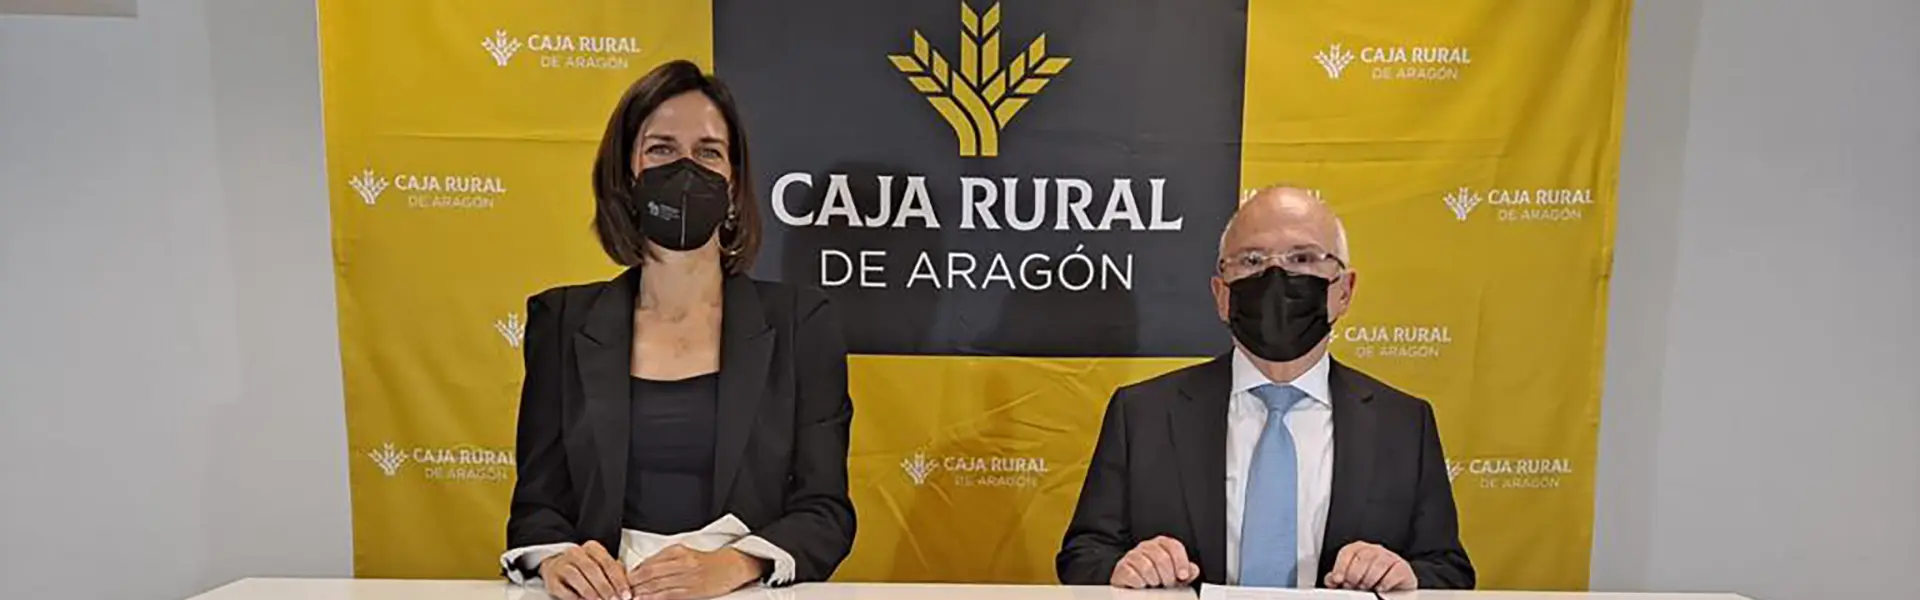 Avalia y Caja Rural renuevan su compromiso de colaboracion hemeroteca cesgar web